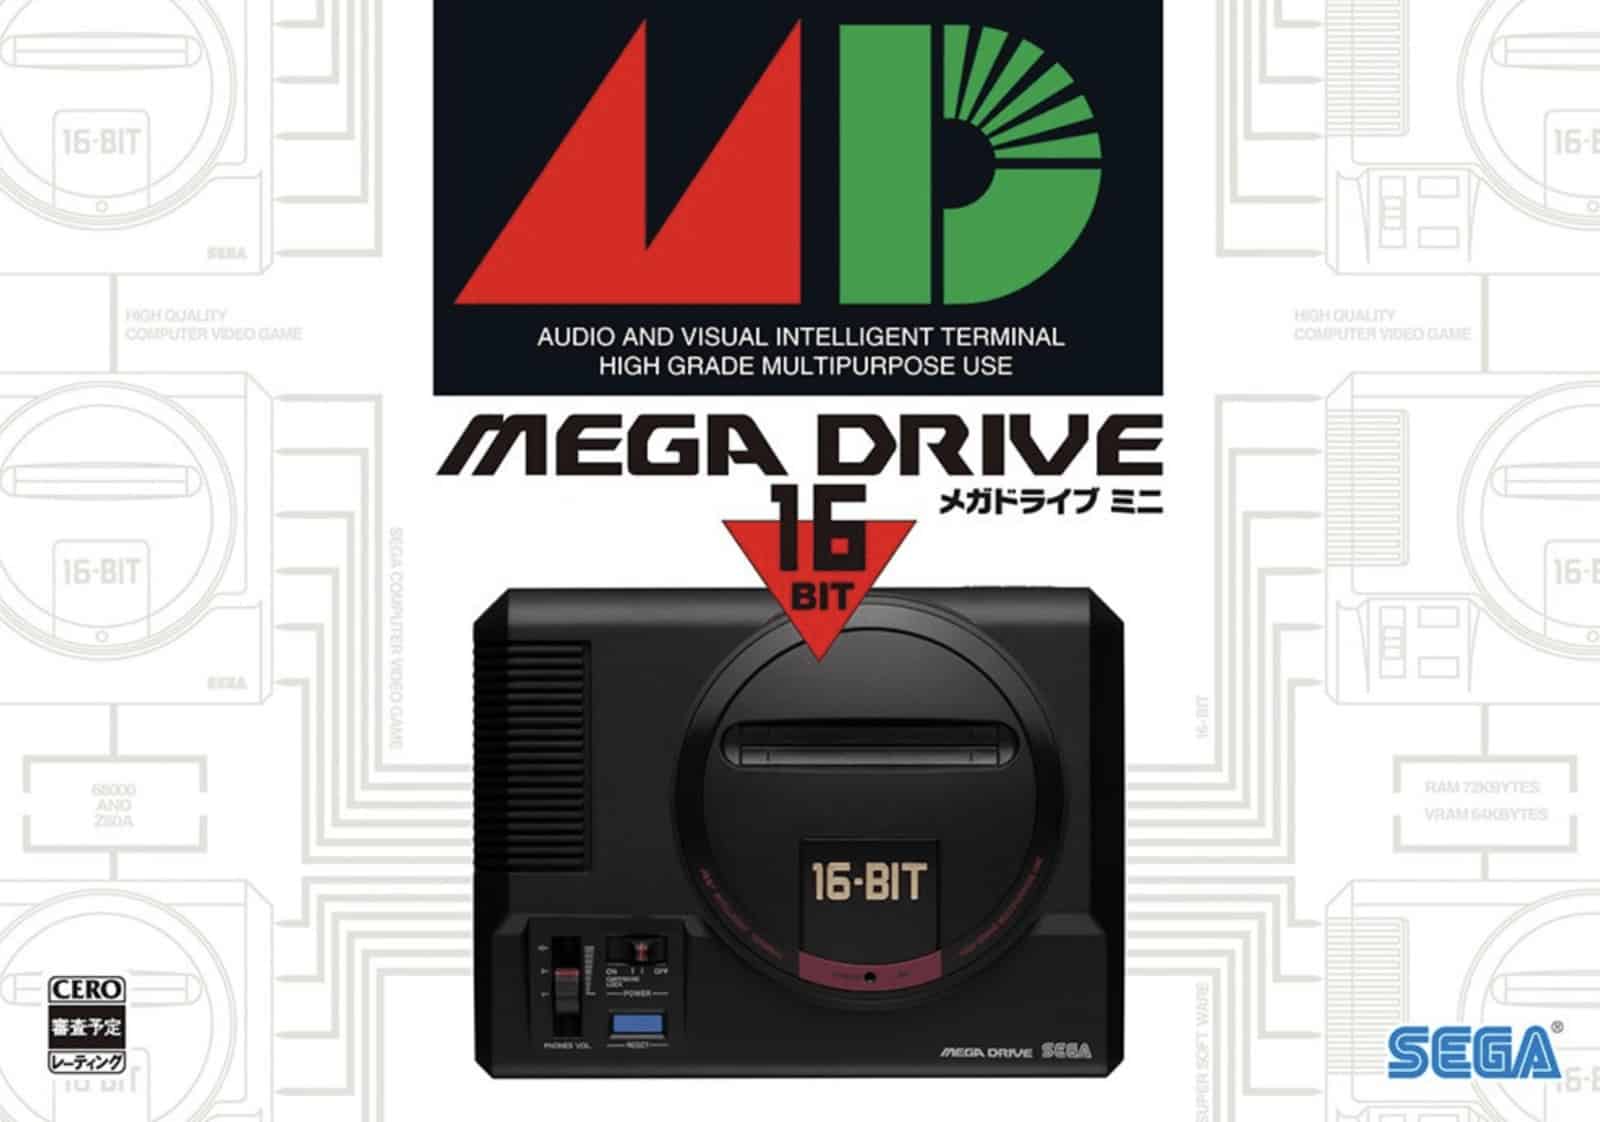 Mega Drive mini